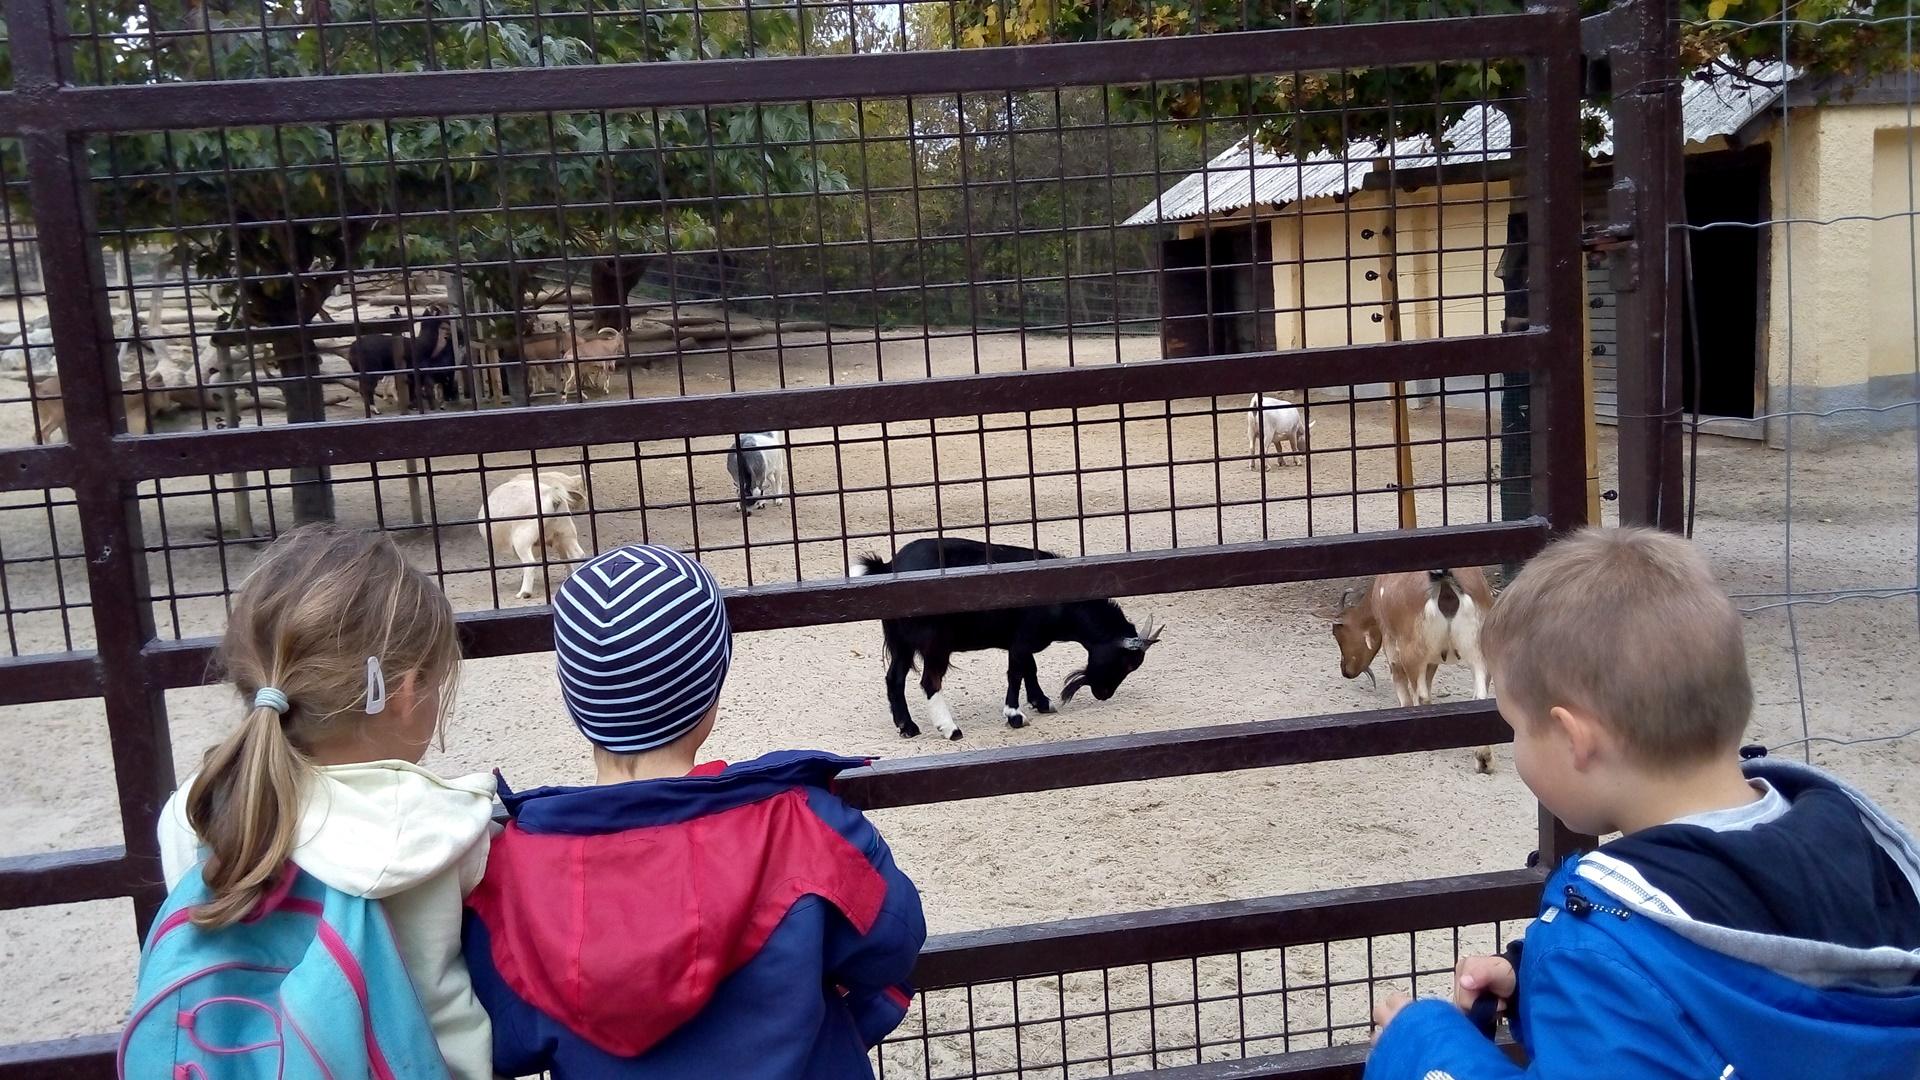 2019. októberében az Állatok világnapja alkalmából ismét ellátogatunk nagycsoportosainkkal a Veszprémi Állatkertbe. A kirándulást megelőzte a házi állatokkal való ismerkedés, hiszen ellátogattunk a faluban található állattartókhoz, pl.: lovakat, teheneket, tyúkokat, kecskéket megnézni. Sokat beszélgettünk az állatok gondozásáról, táplálkozásáról, életmódjáról, hasznáról. A témához kapcsolódóan mesékkel, dalokkal, mondókákkal ismerkedhettek meg a gyerekek.
Az állatokkal való ismerkedést az állatkerti séta kapcsán a vadállatokkal, illetve a nálunk nem élő állatokkal folytattuk októberben. 
A kirándulás alkalmával a gyerekeknek lehetőségük volt a már kihalt dinoszauruszokat is „megnézni” a dino parkban, „dino csontvázat” kereshettek közösen a homokban, és a kirándulás végén birtokba vehették a játszóteret is. 
